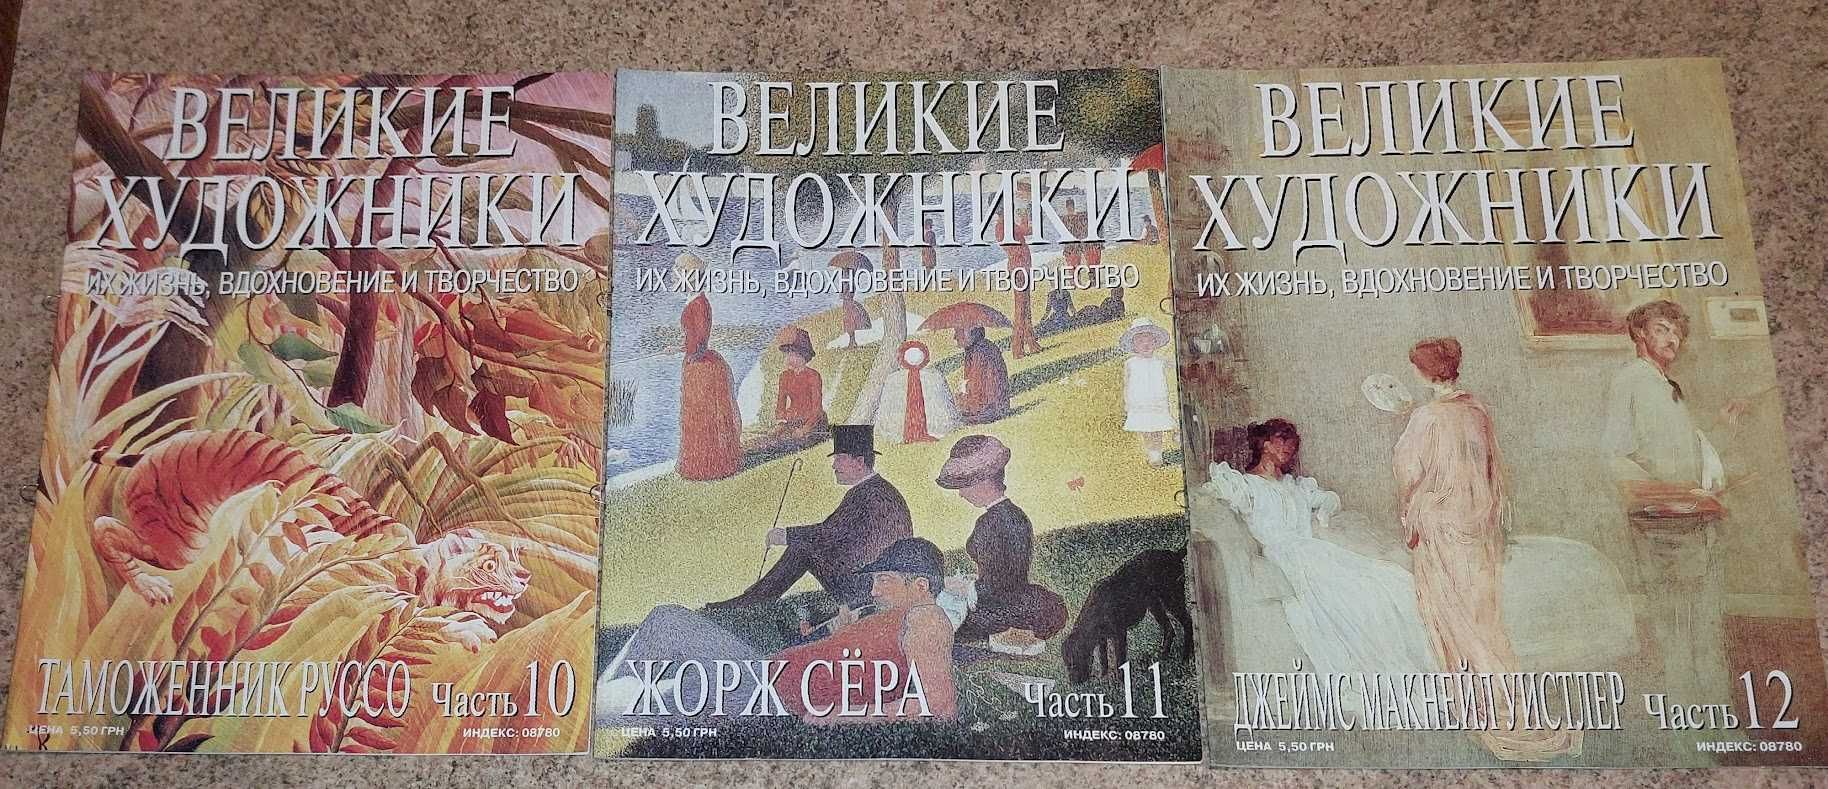 Серия журналов "Великие художники". 13 выпусков.